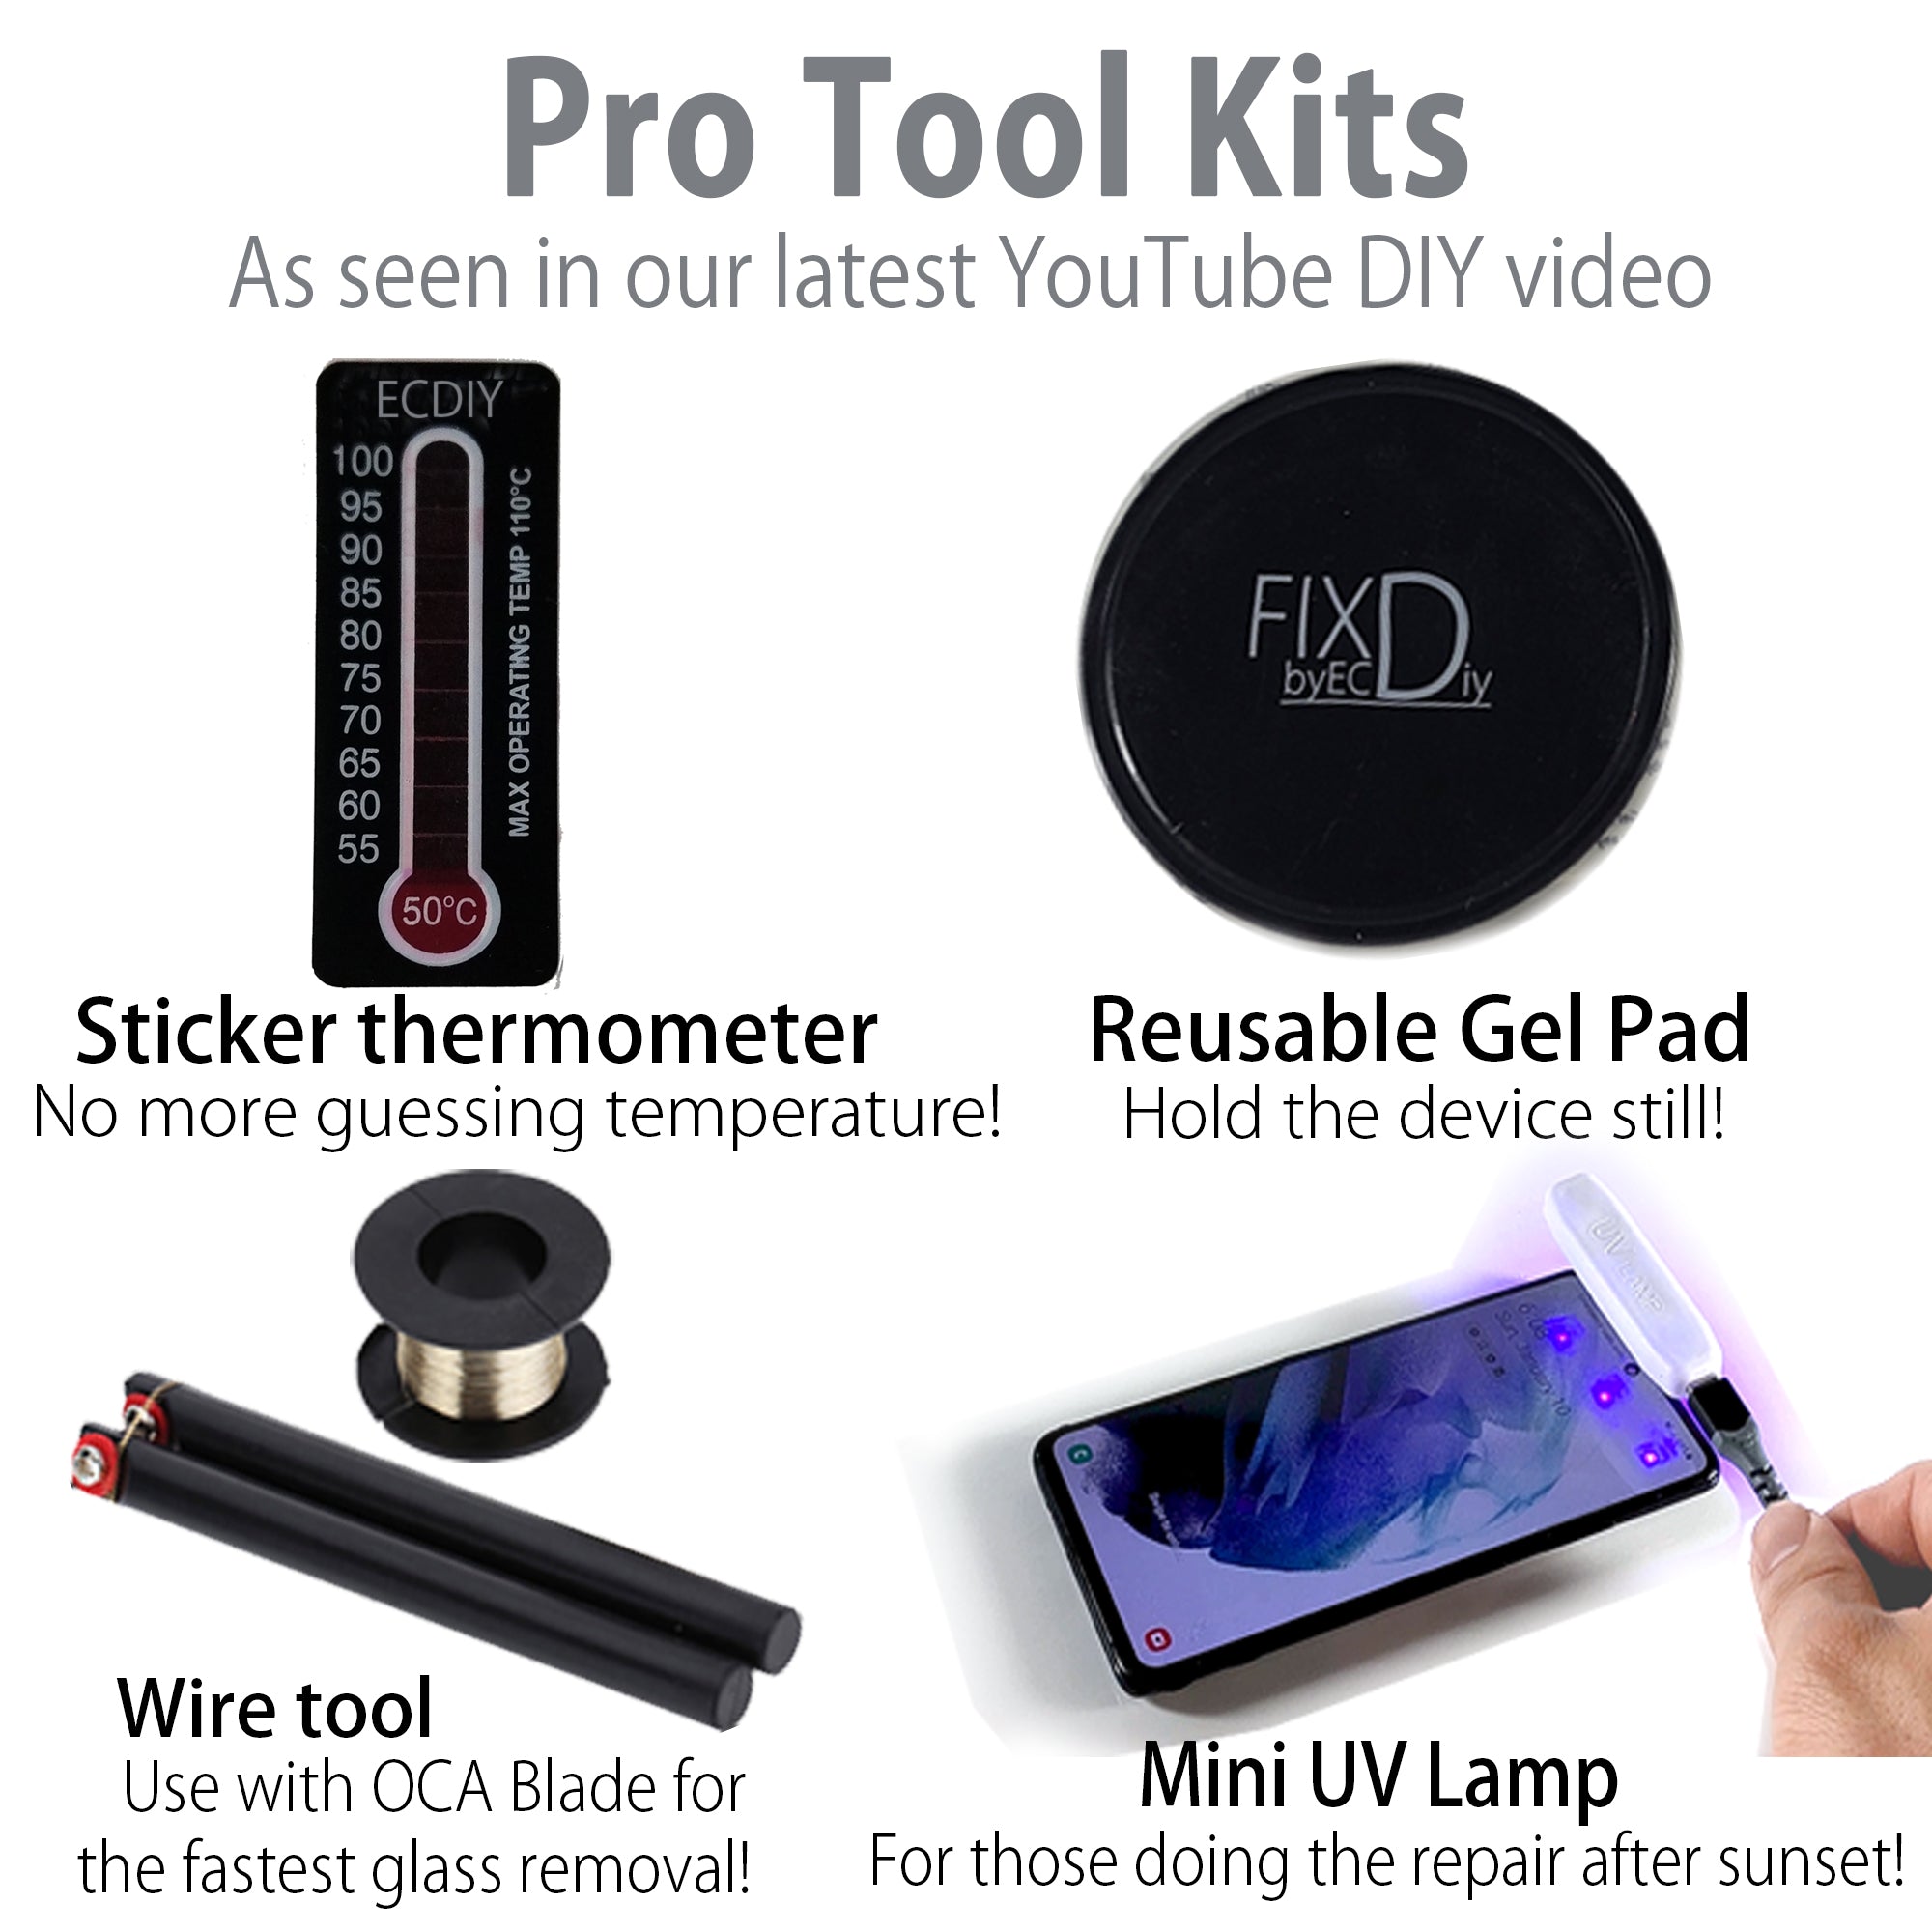 Pro Tool Kit